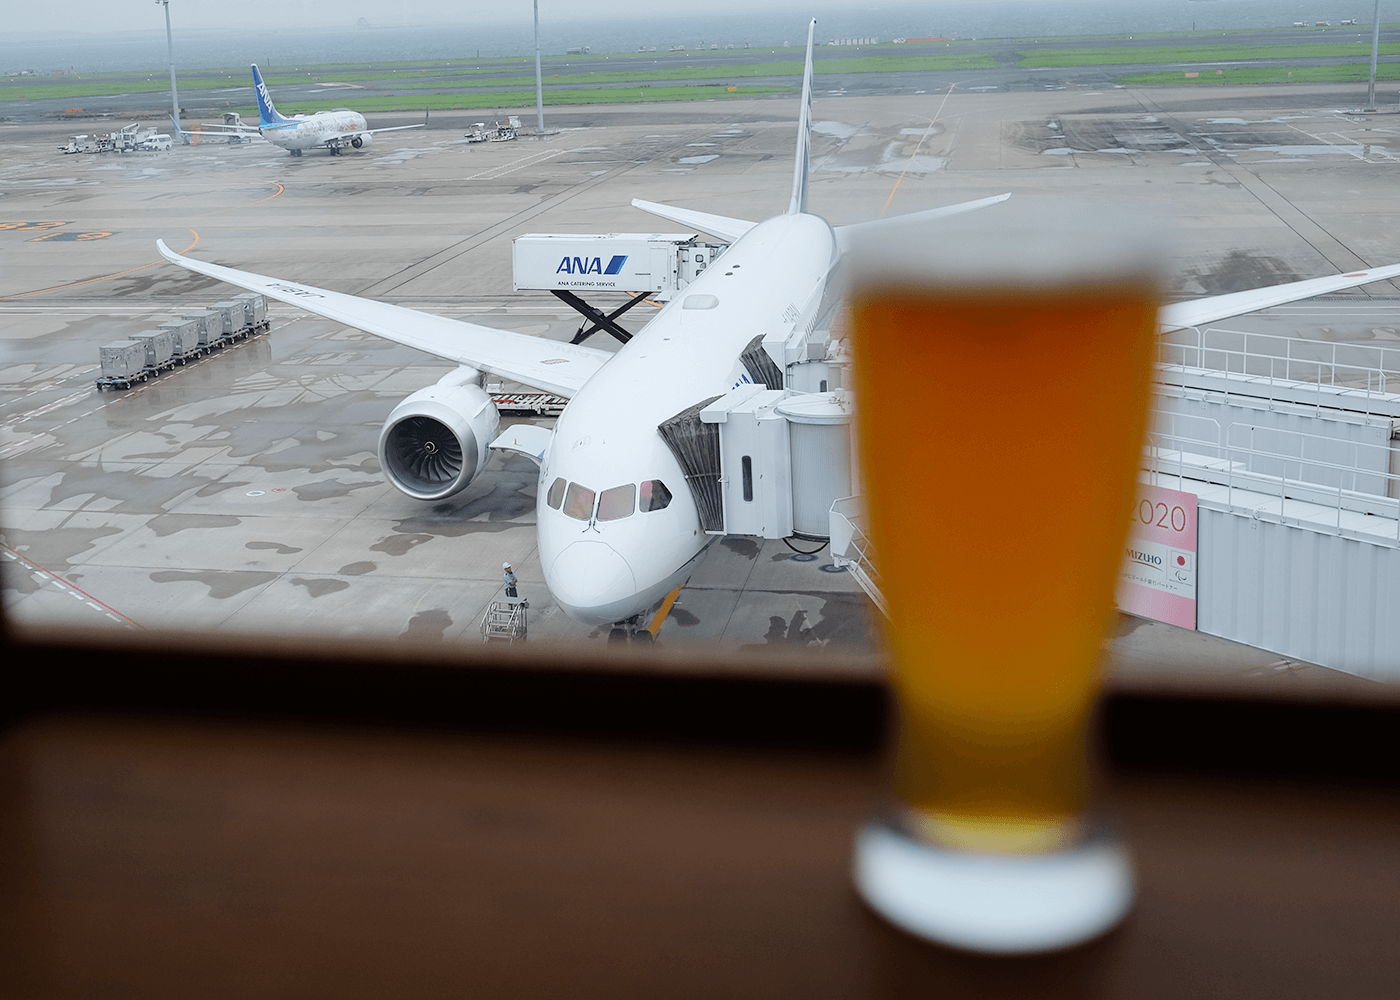 羽田限定クラフトビールを、滑走路を見ながらいただく@東京, 羽田空港第2ターミナル エアポートグリル＆バール（Airport Grill and Bar）